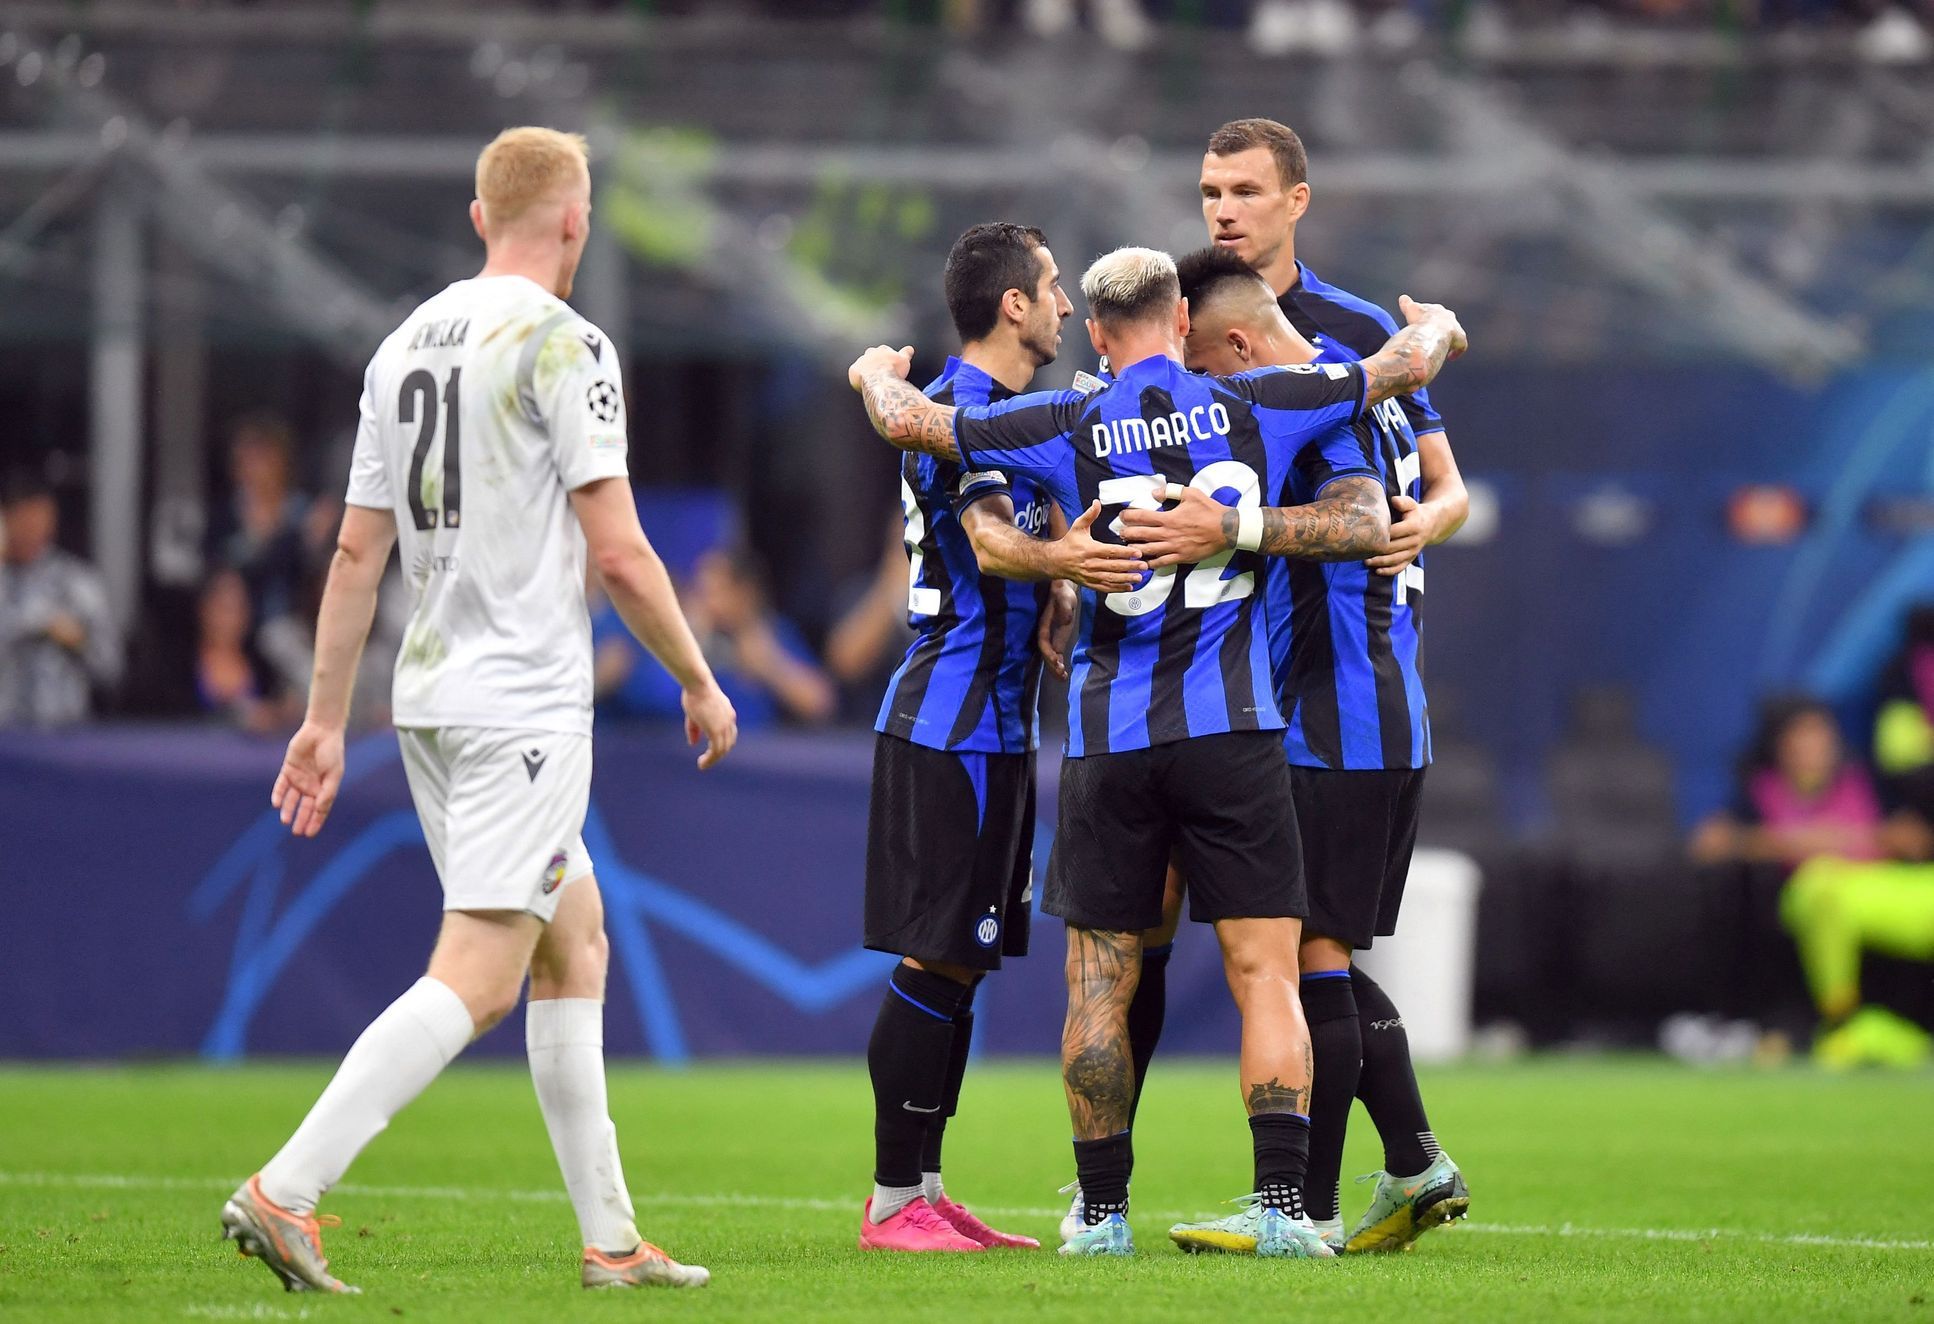 L’Inter ha battuto il “volontario ceco”, riportano i media italiani.  L’allenatore Bílek ha sorpreso i giornalisti